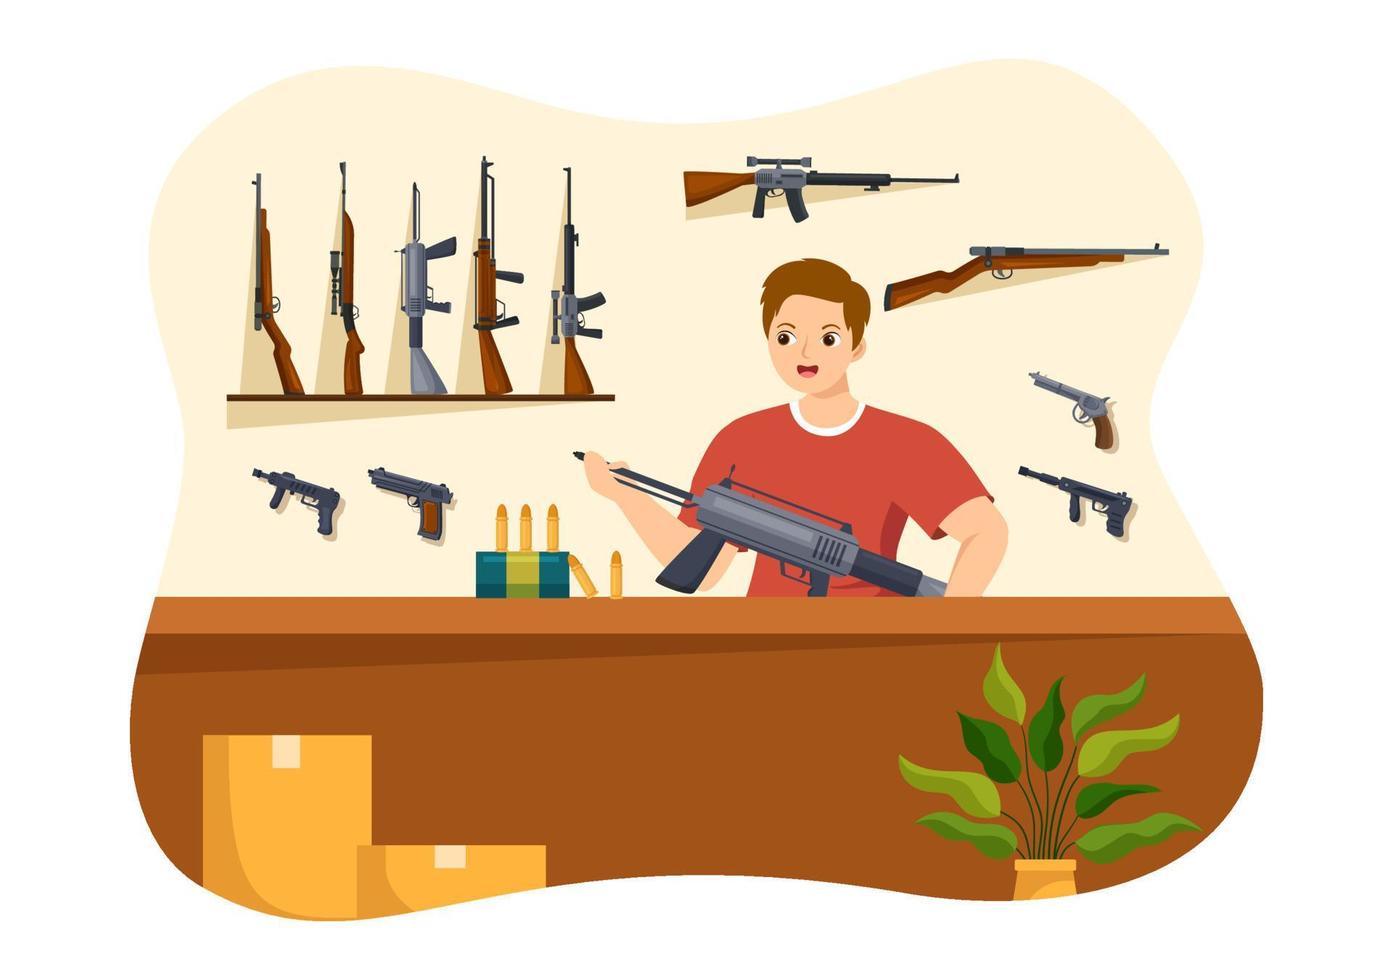 armurerie ou chasse avec fusil, balle, arme et équipement de chasse dans un dessin animé de style plat illustration de modèles dessinés à la main vecteur